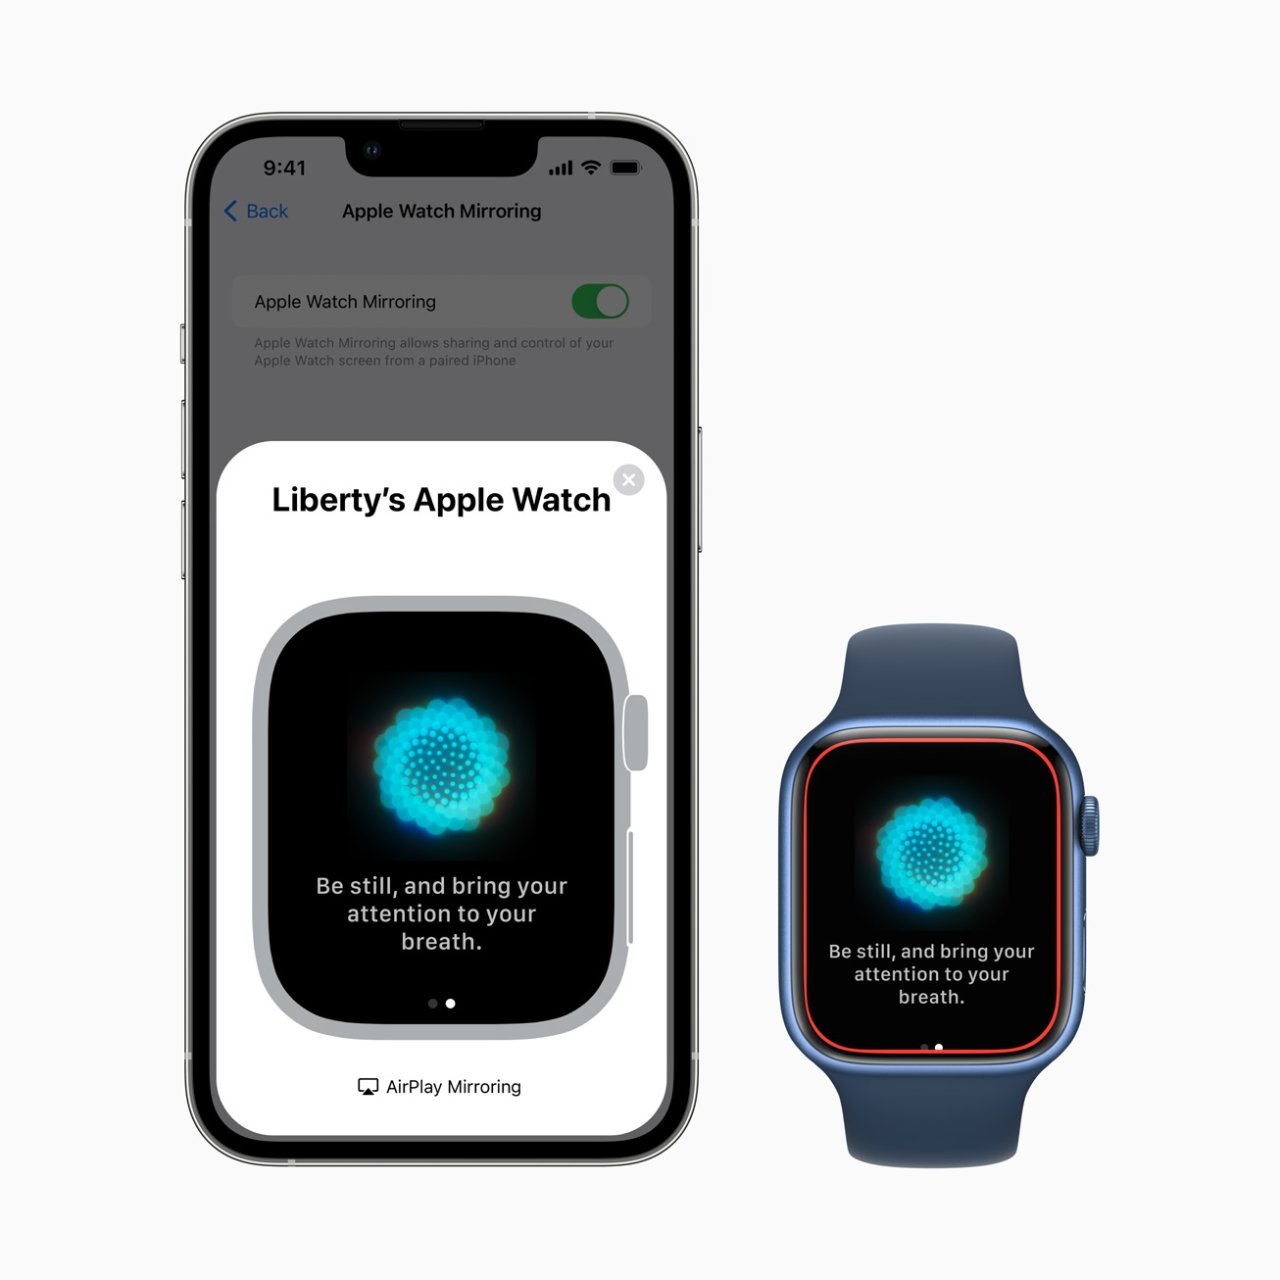 El nuevo Apple Watch Mirroring permite a los usuarios controlar su reloj a través de su iPhone